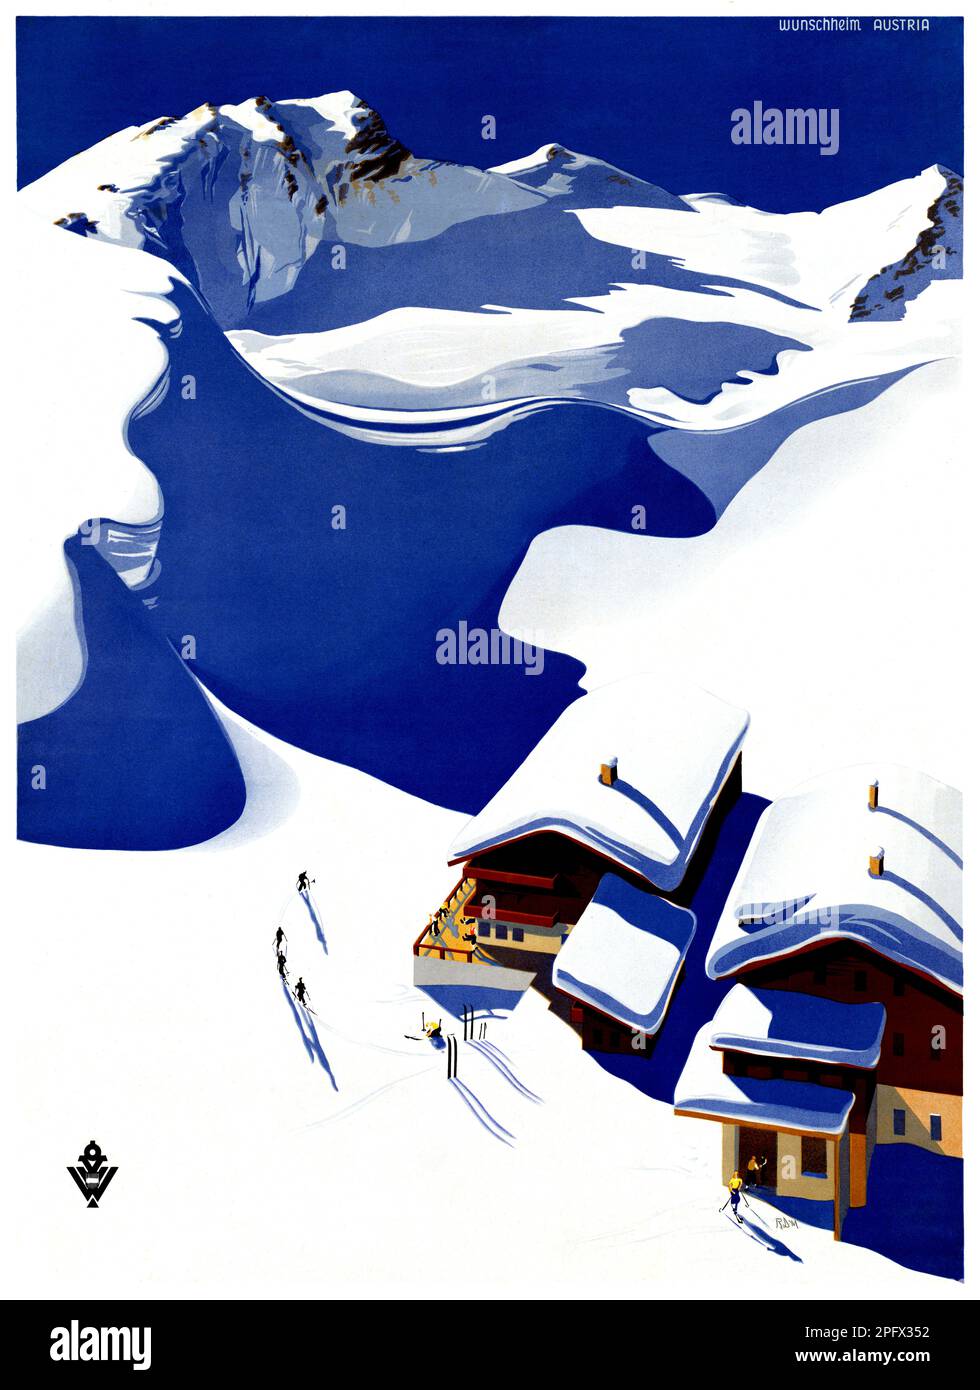 Austria by Erich von Wunschheim (dates unknown). Poster published in 1937. Stock Photo